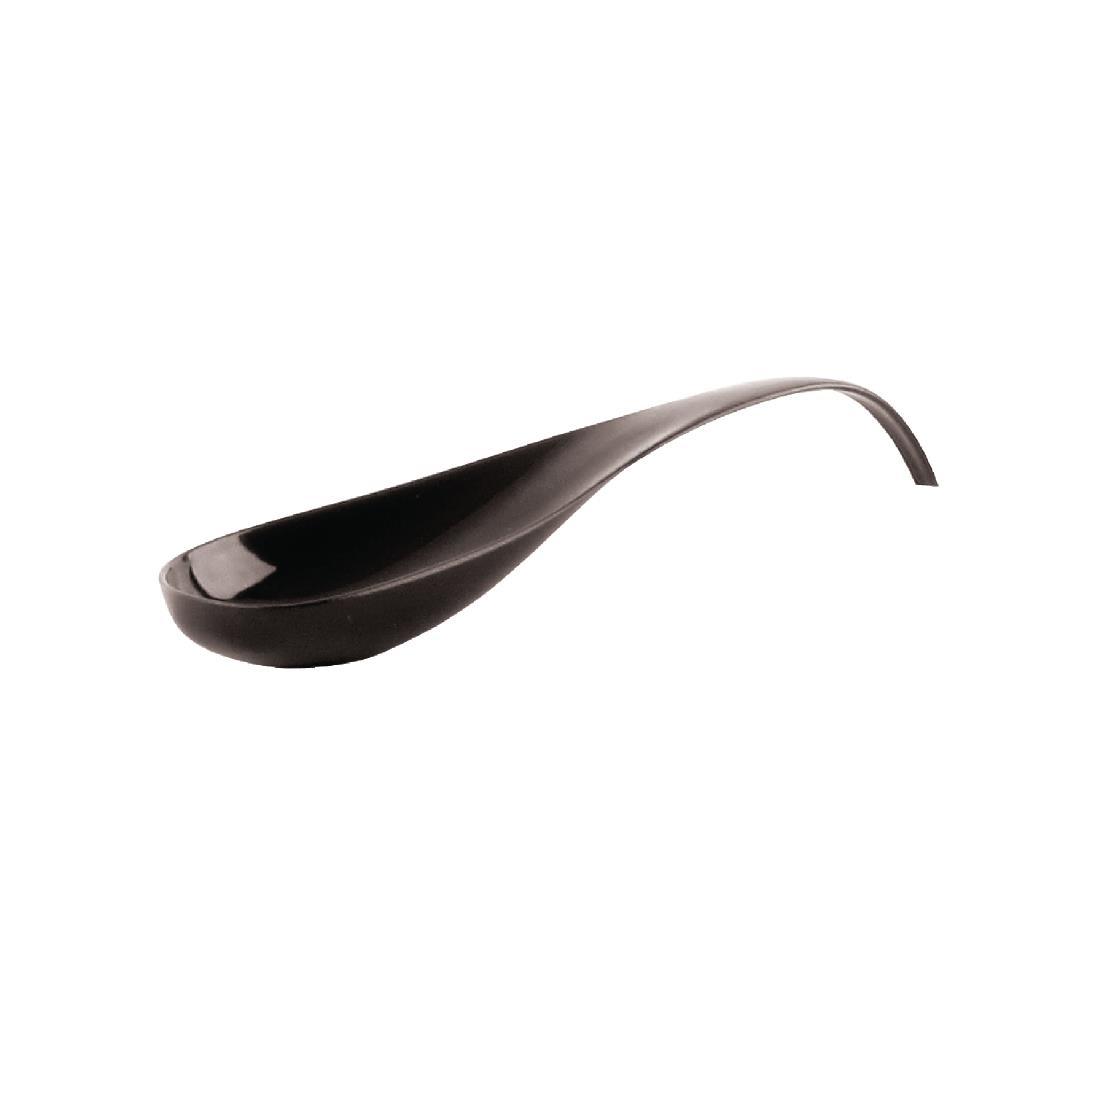 Araven Curved Tasting Spoon Black (Pack of 100) - DP166  - 1